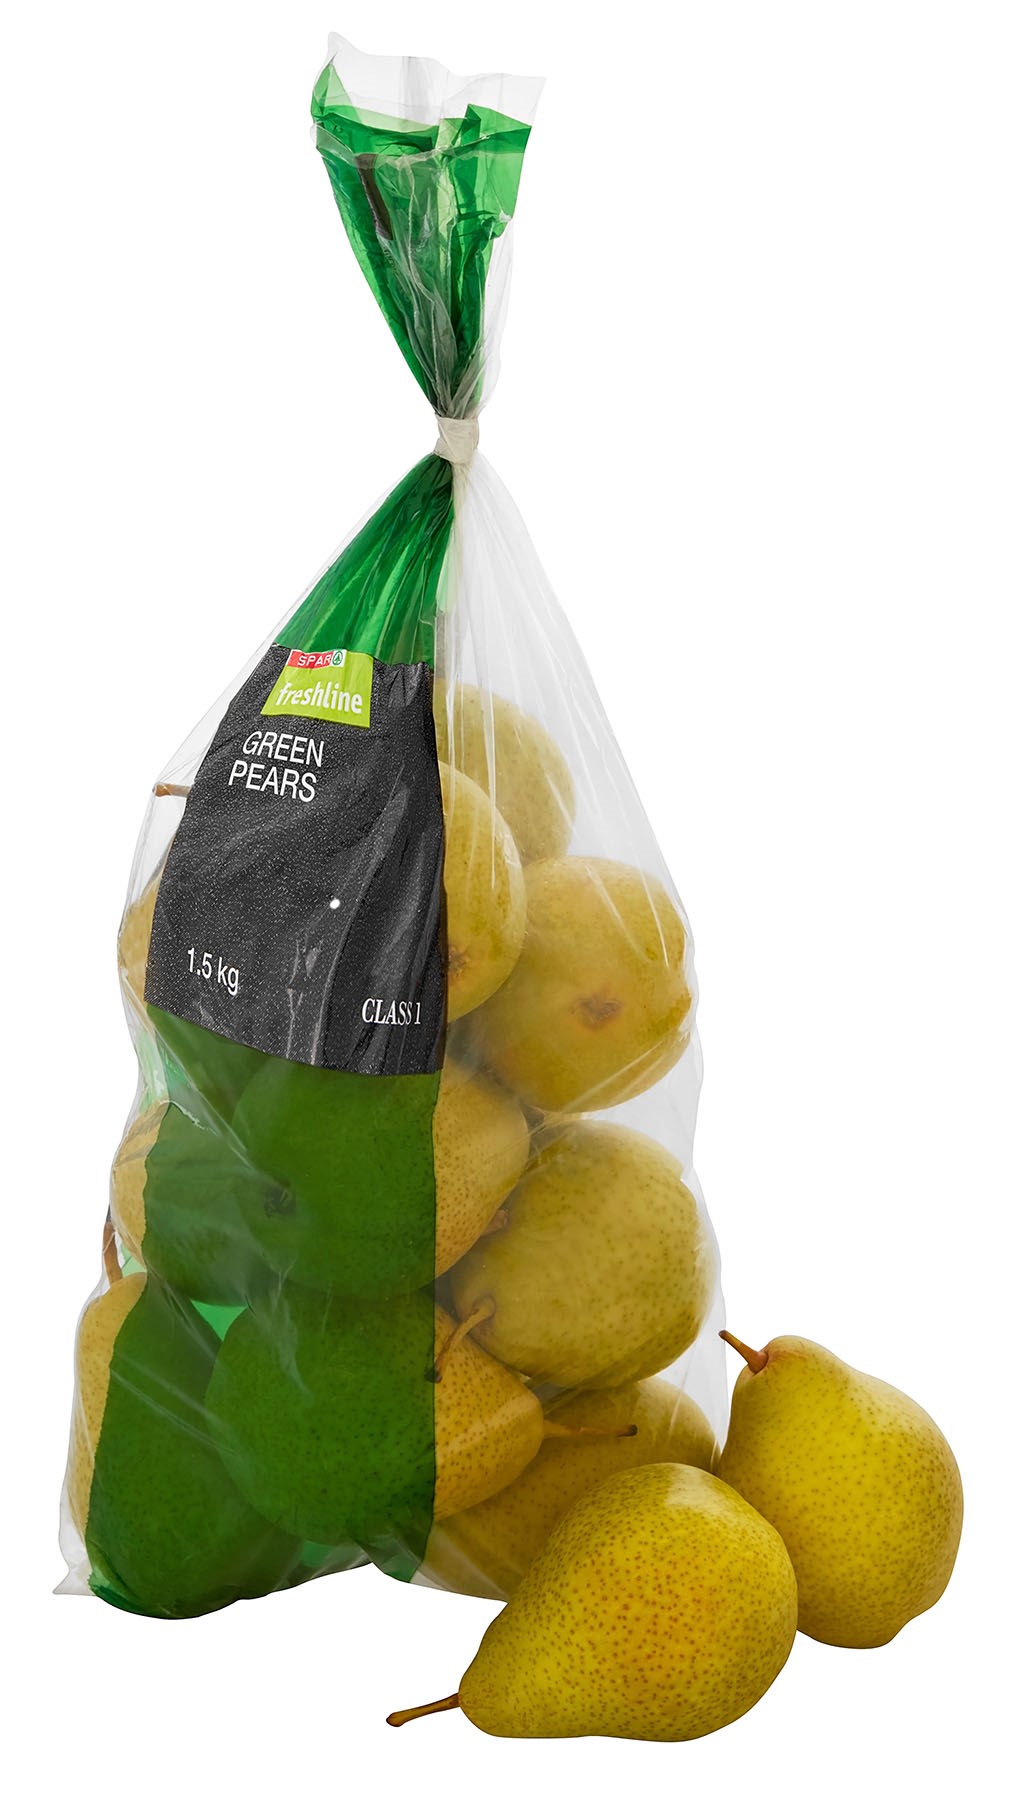 freshline green pears                                   